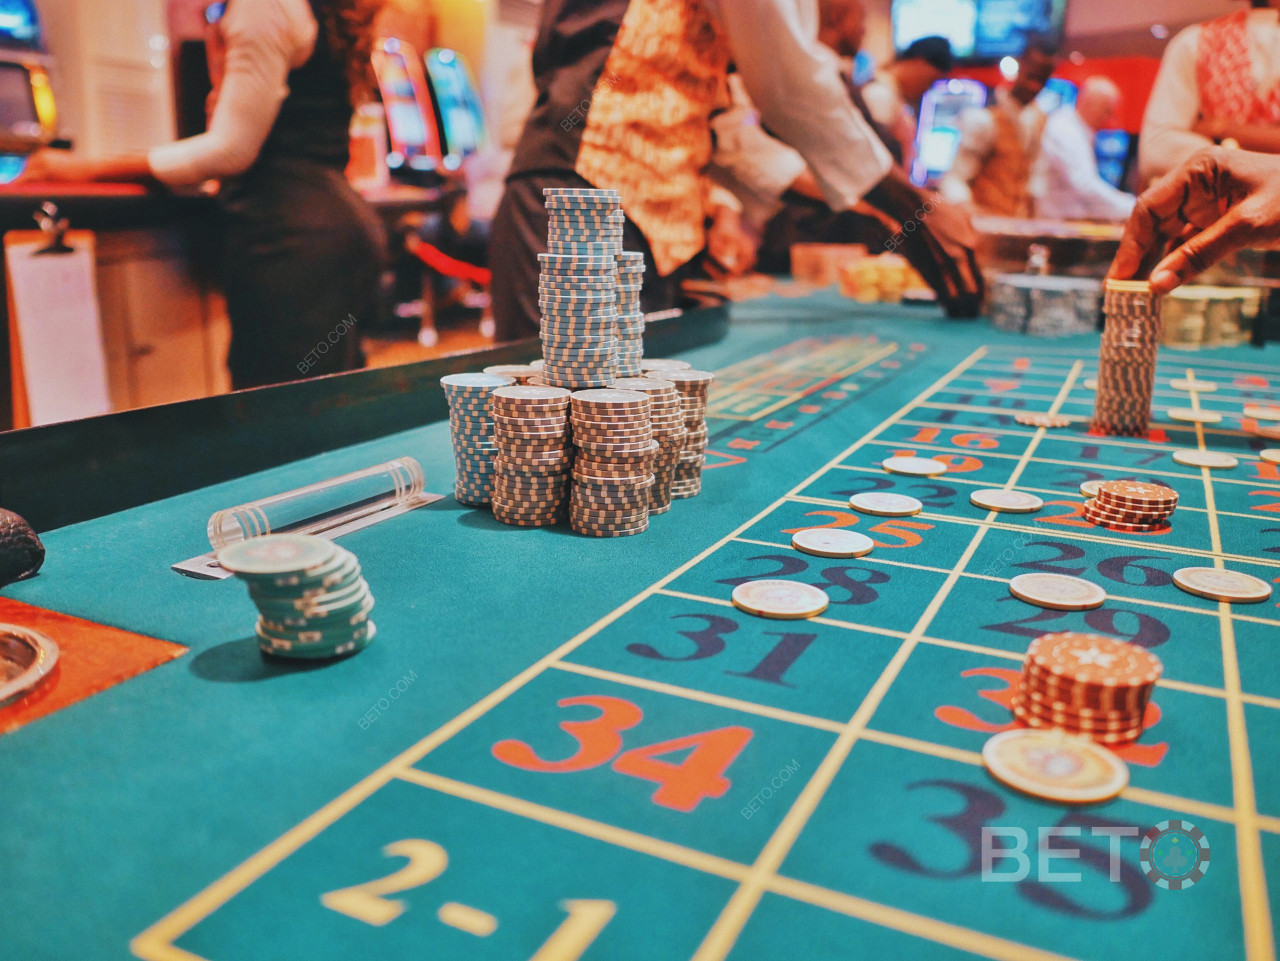 888 је један од најбољих казино оператера на тржишту. Играјте блацкјацк и друге игре.